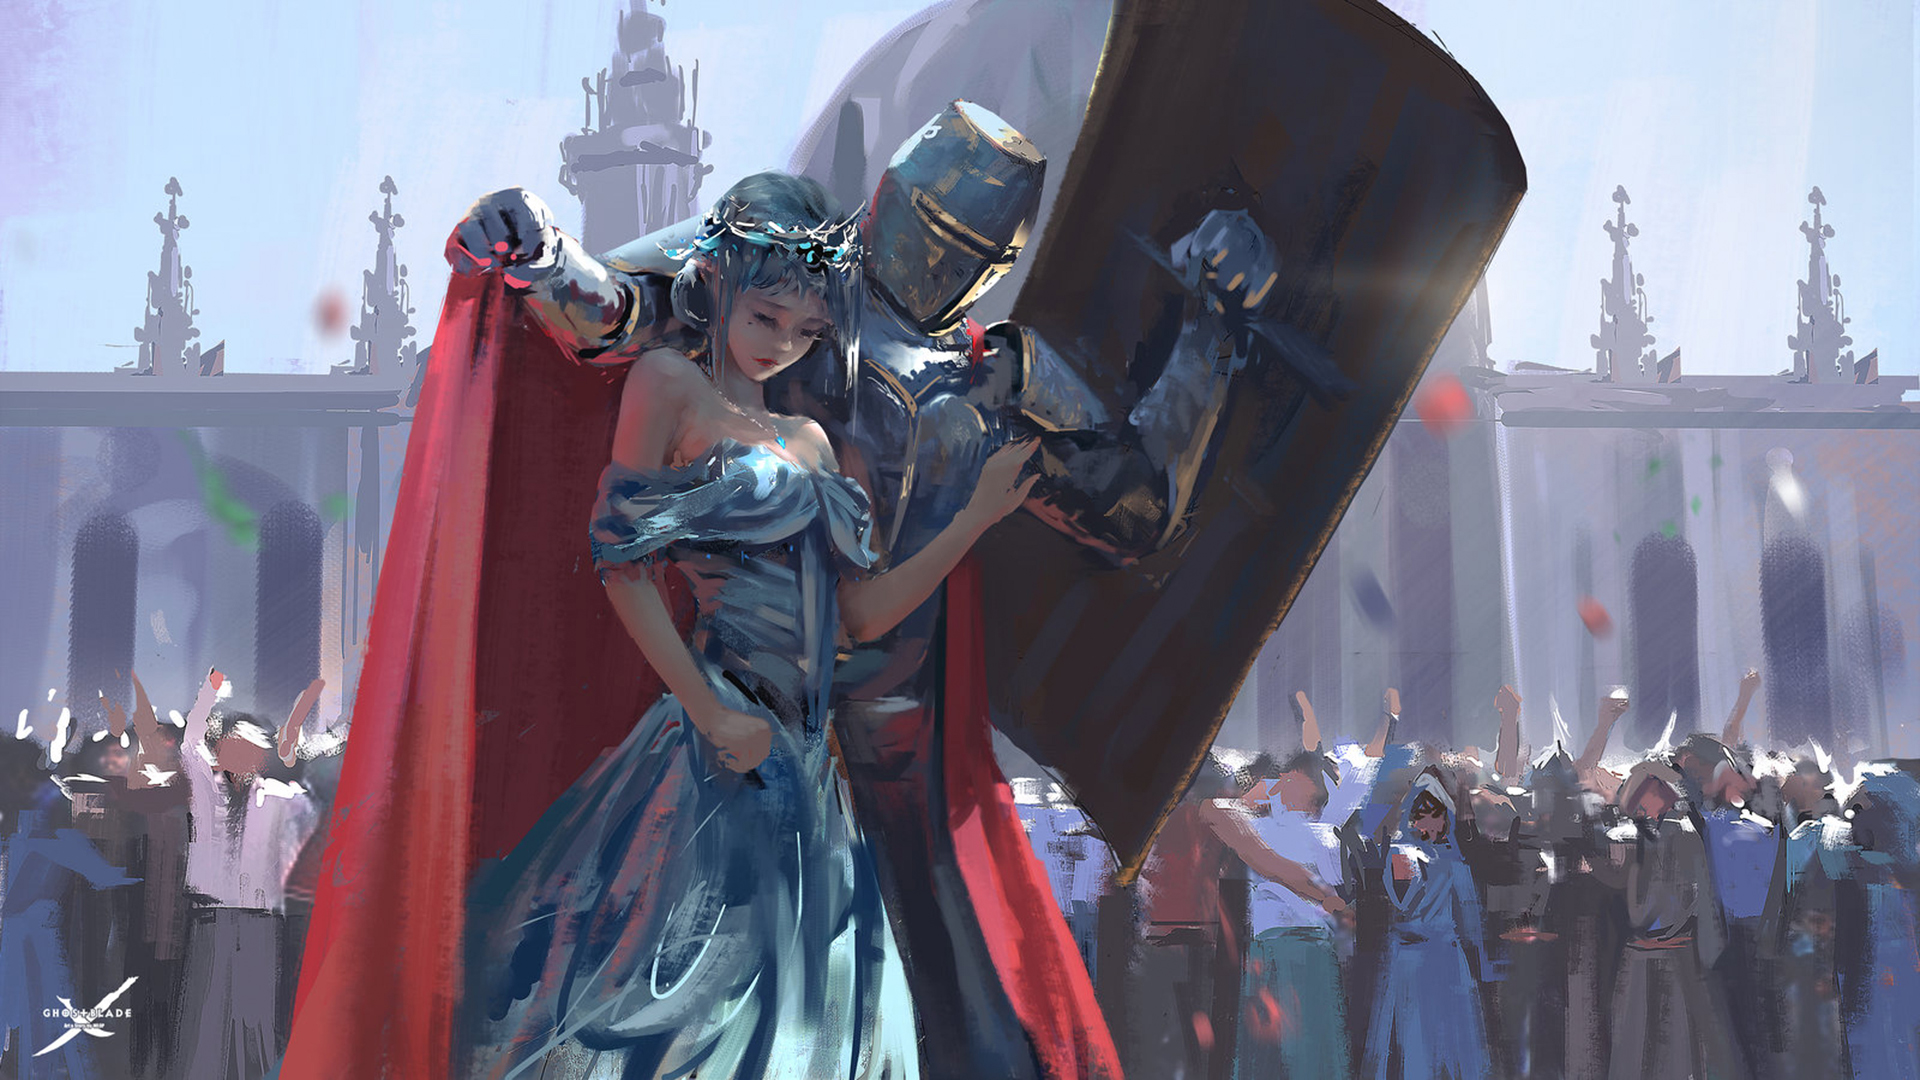 Knight Protecting Princess Art - HD Wallpaper 